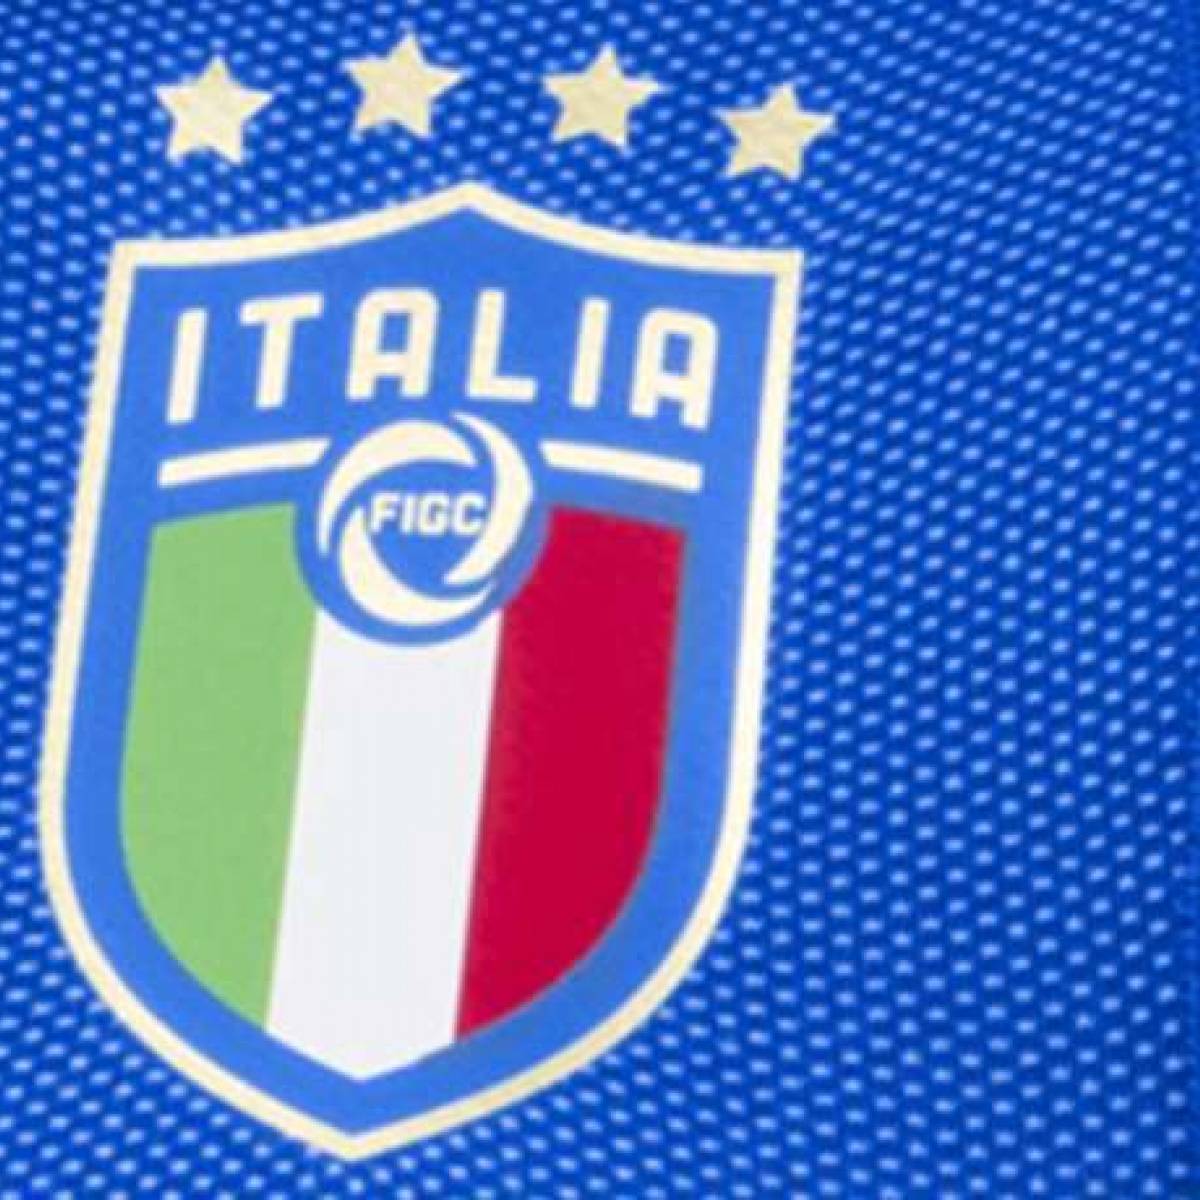 camiseta seleccion italiana 2017